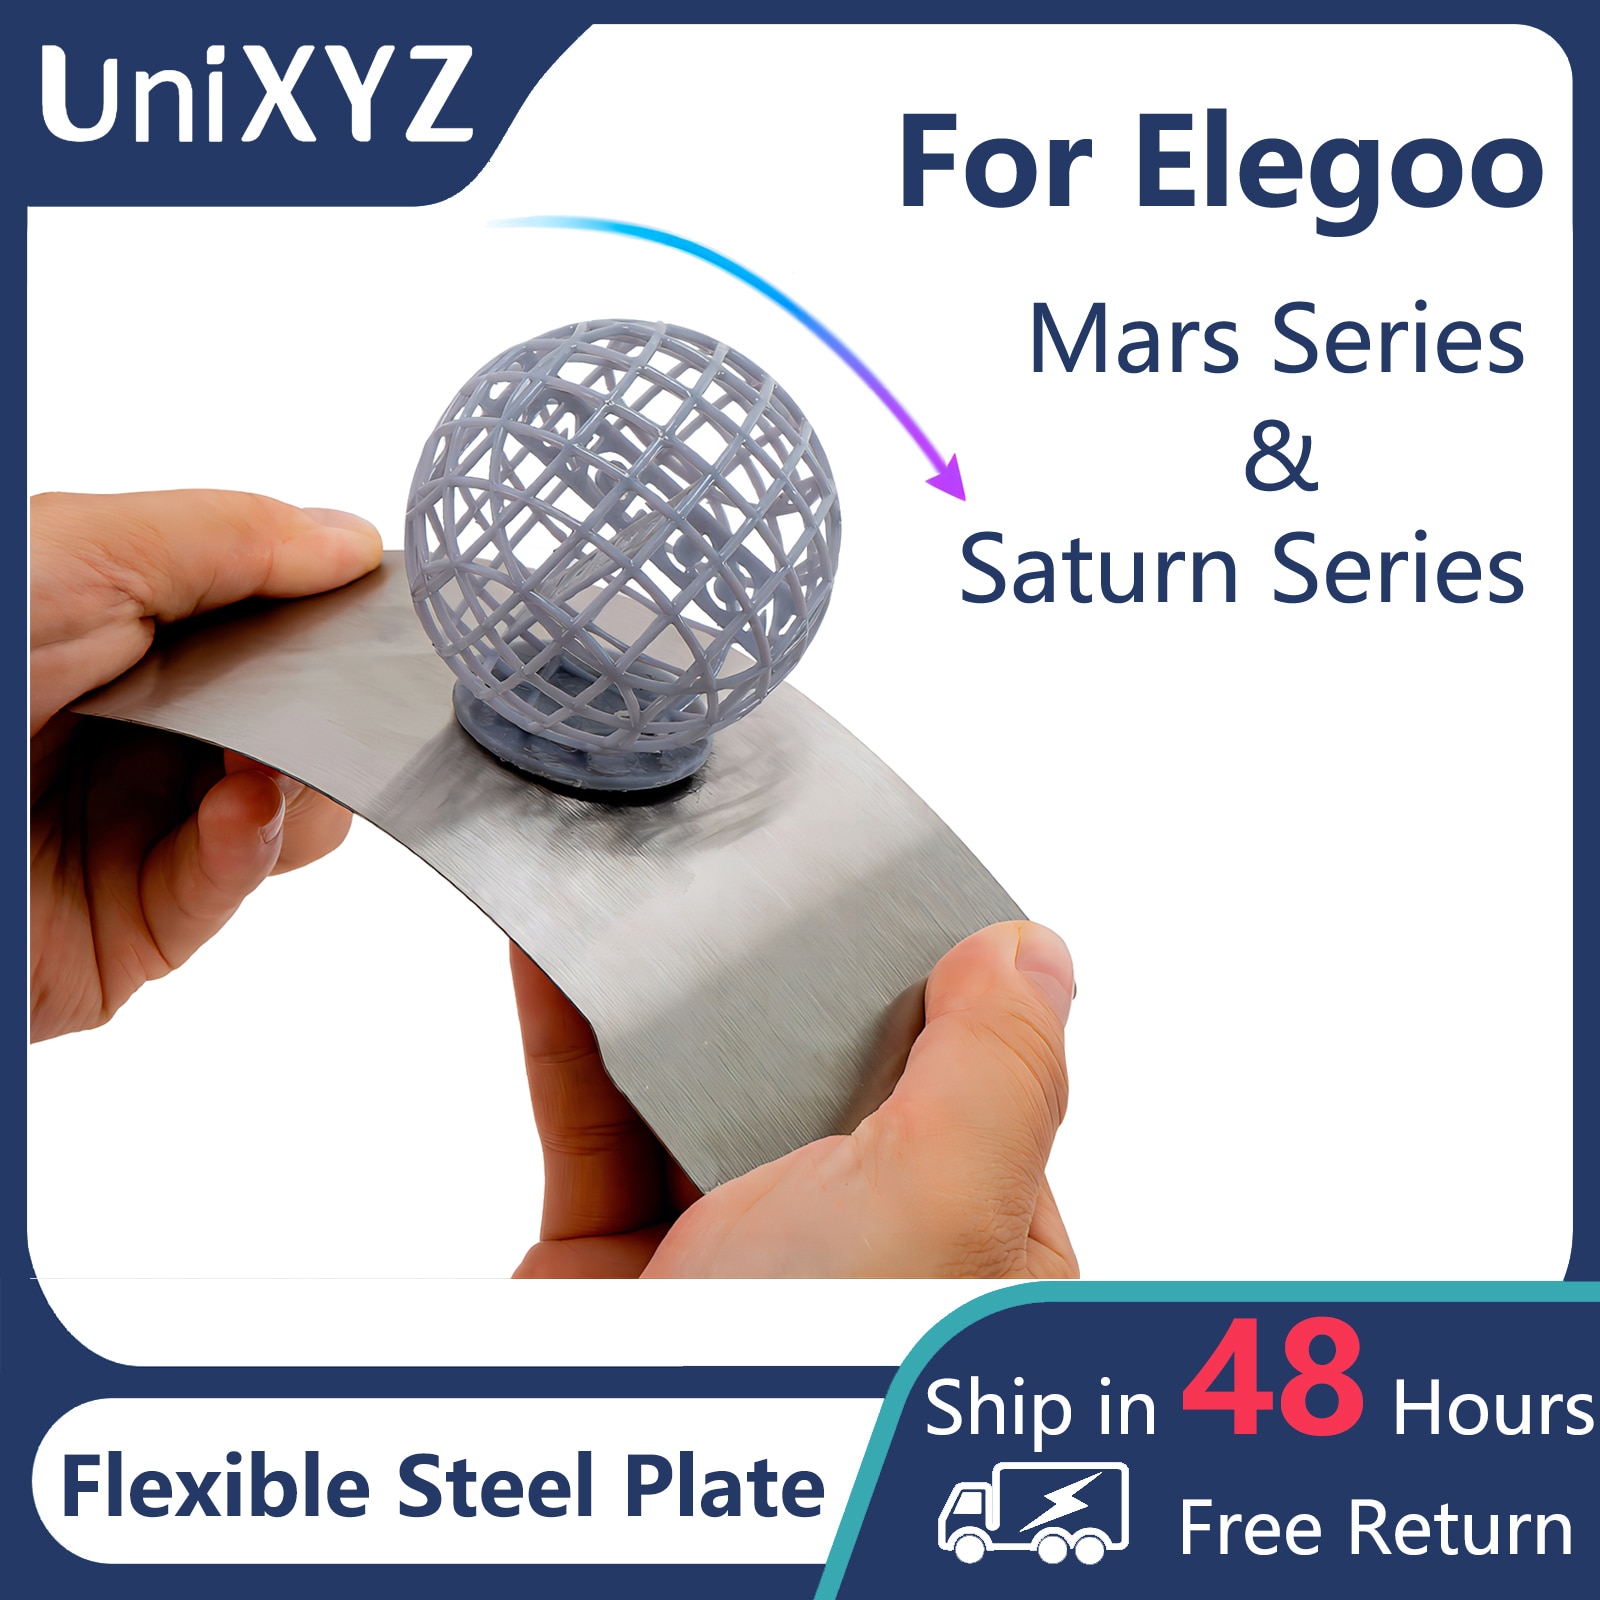 ELEGOO Saturn 2 Build Plate